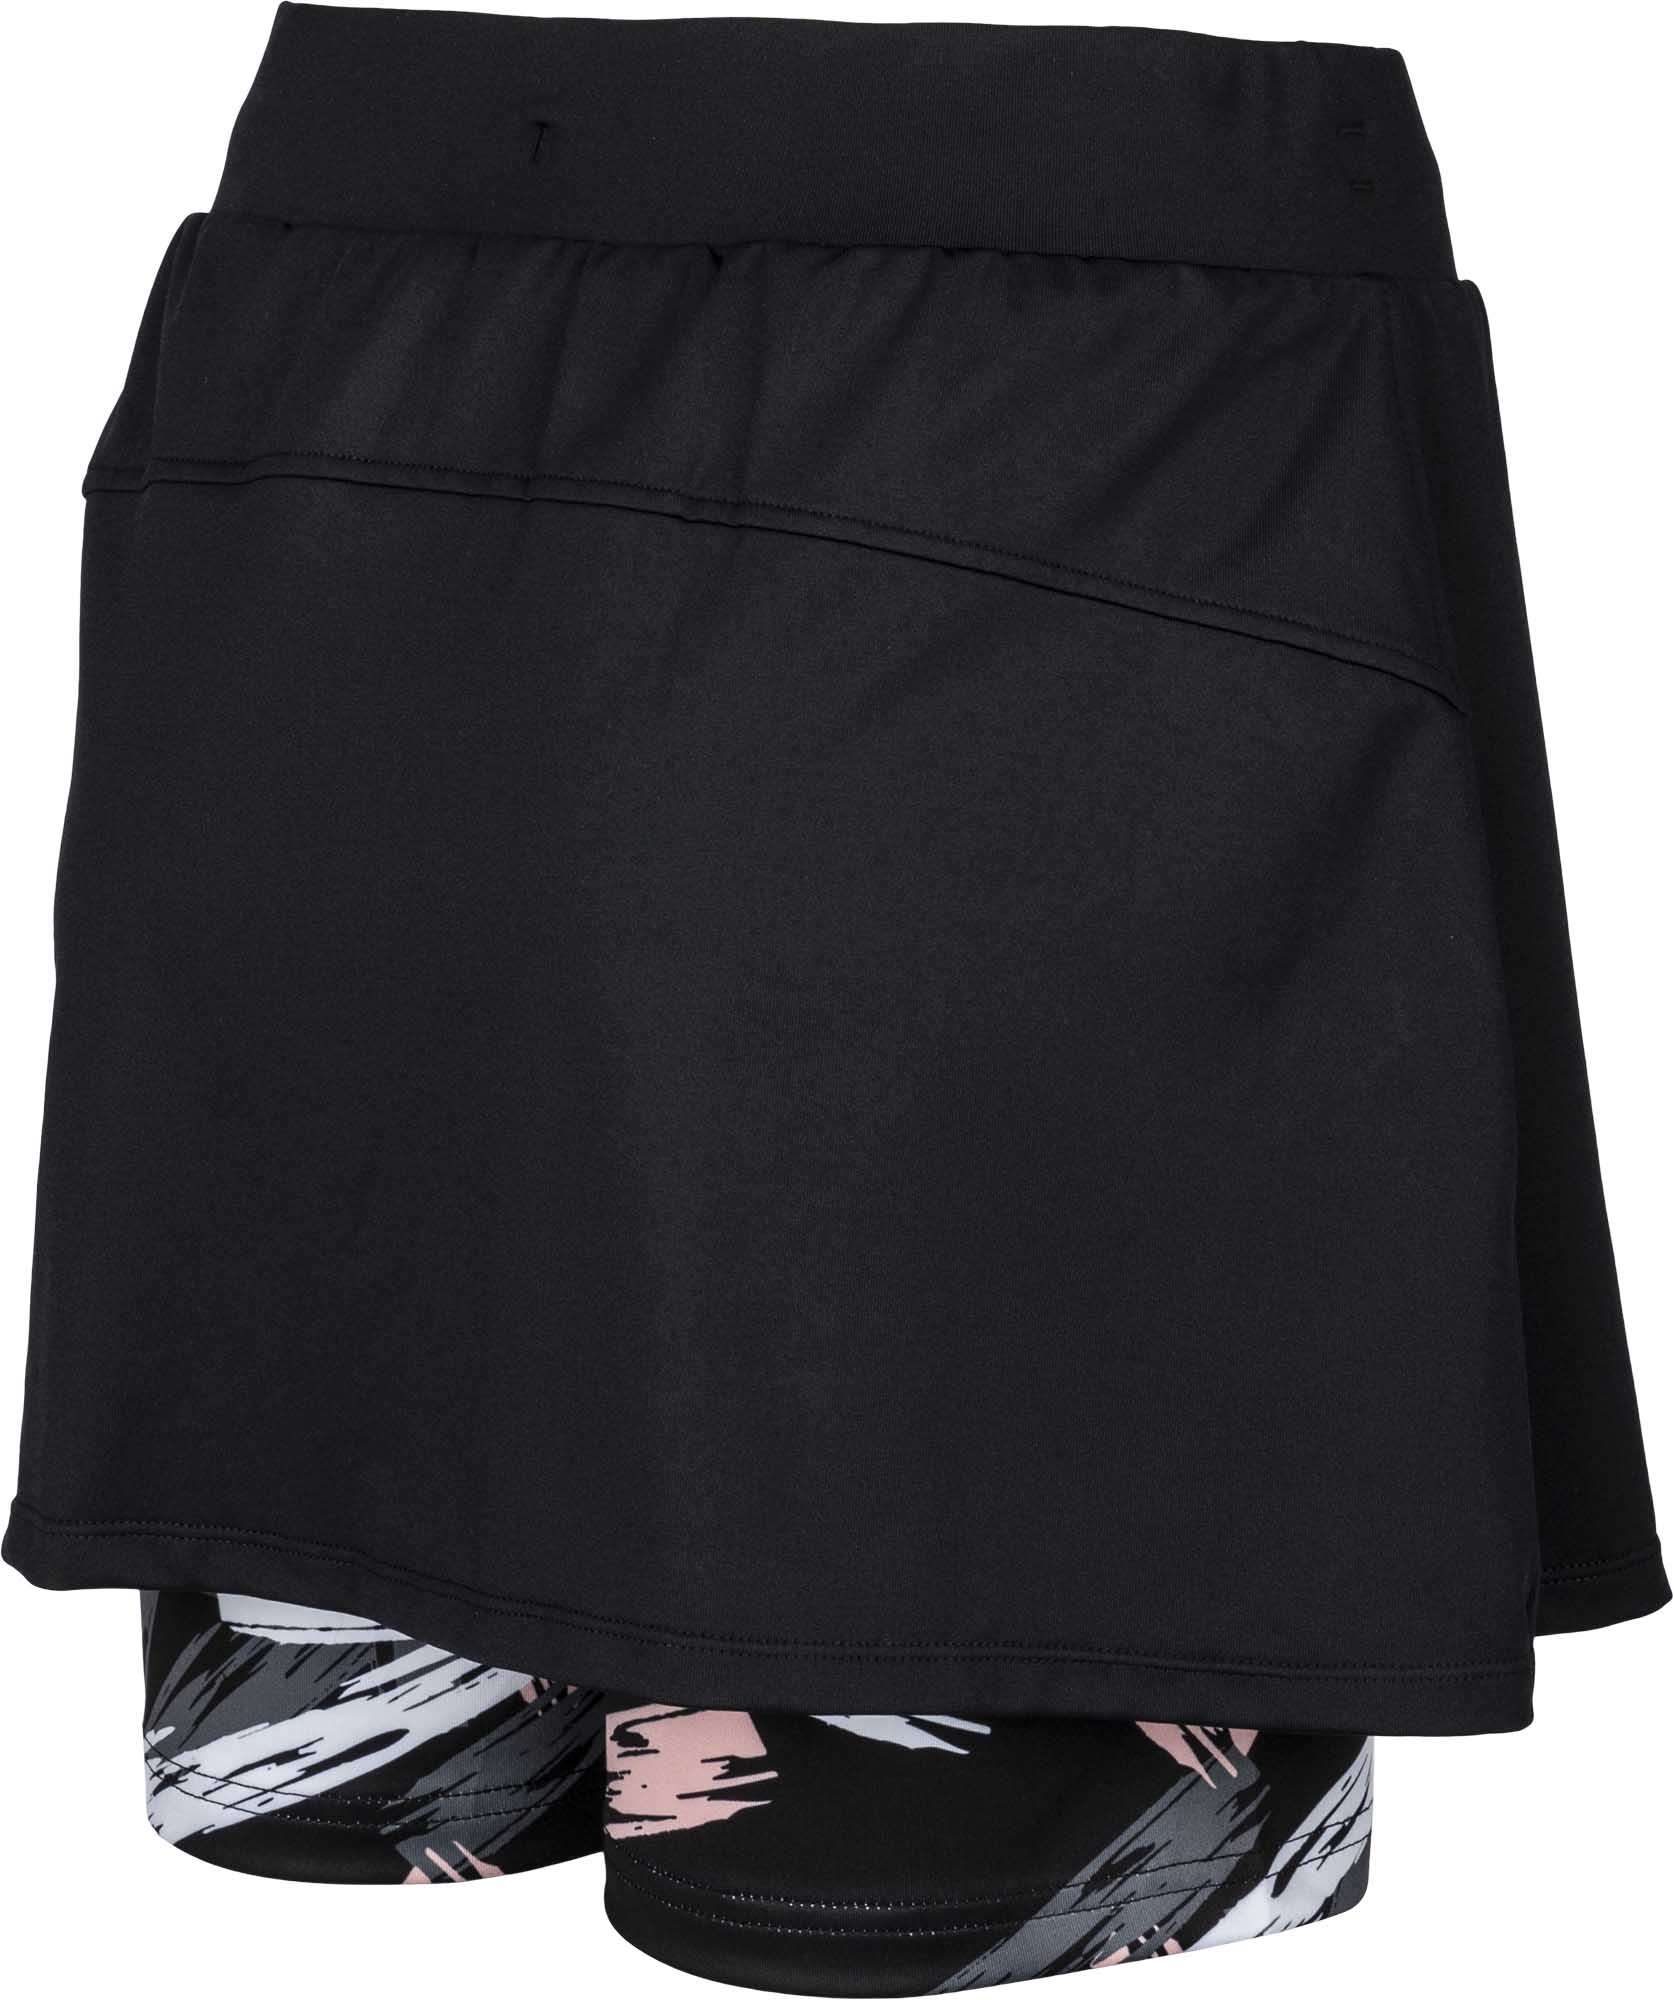 Women's 2in1 outdoor skirt